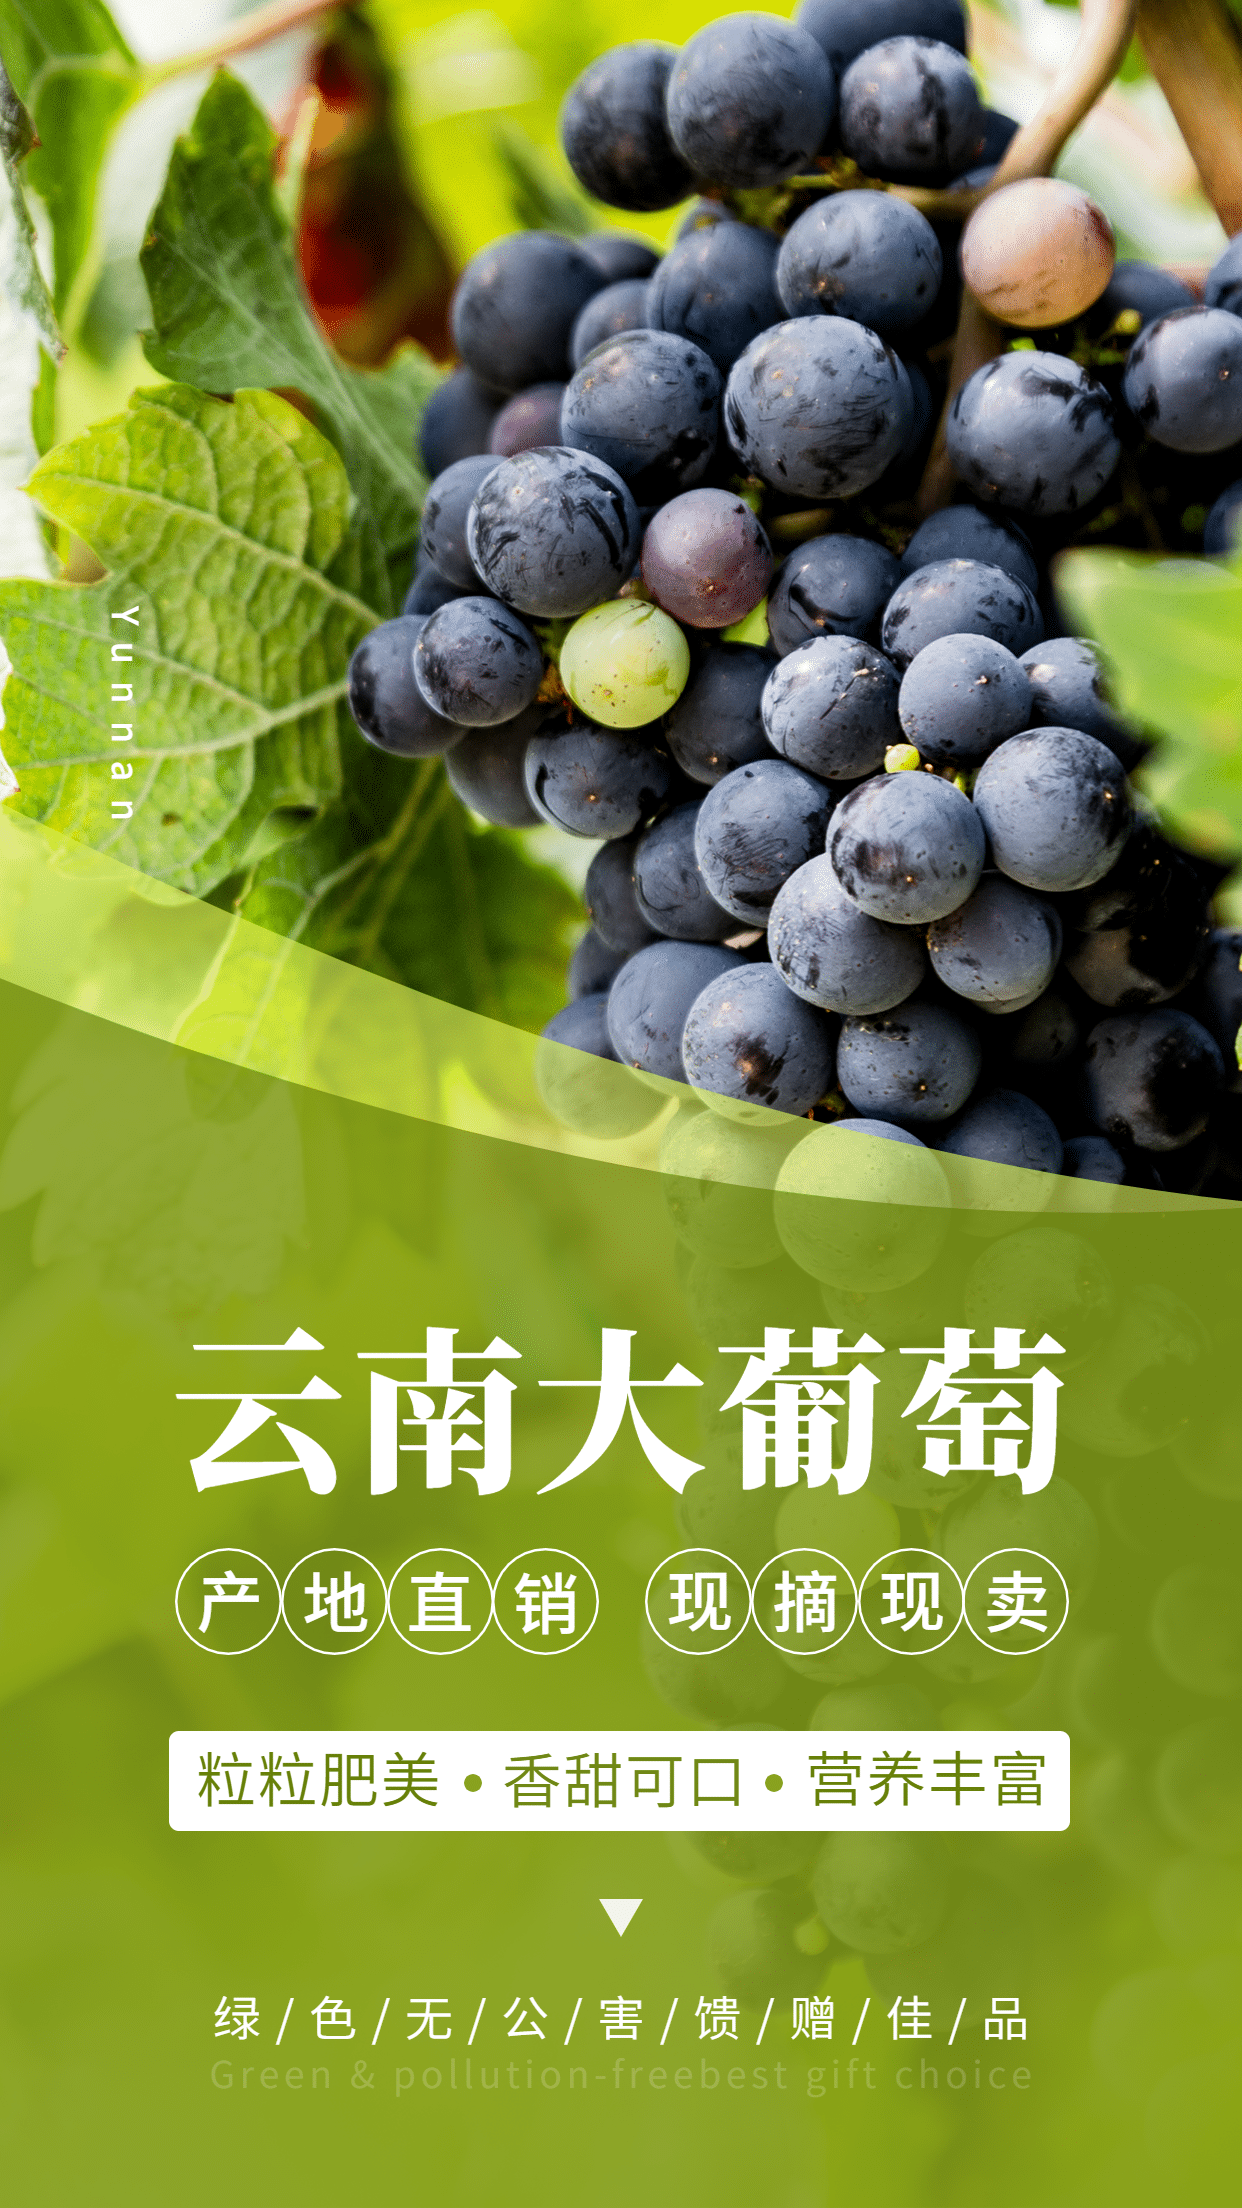 水果大葡萄特产产品展示手机海报预览效果